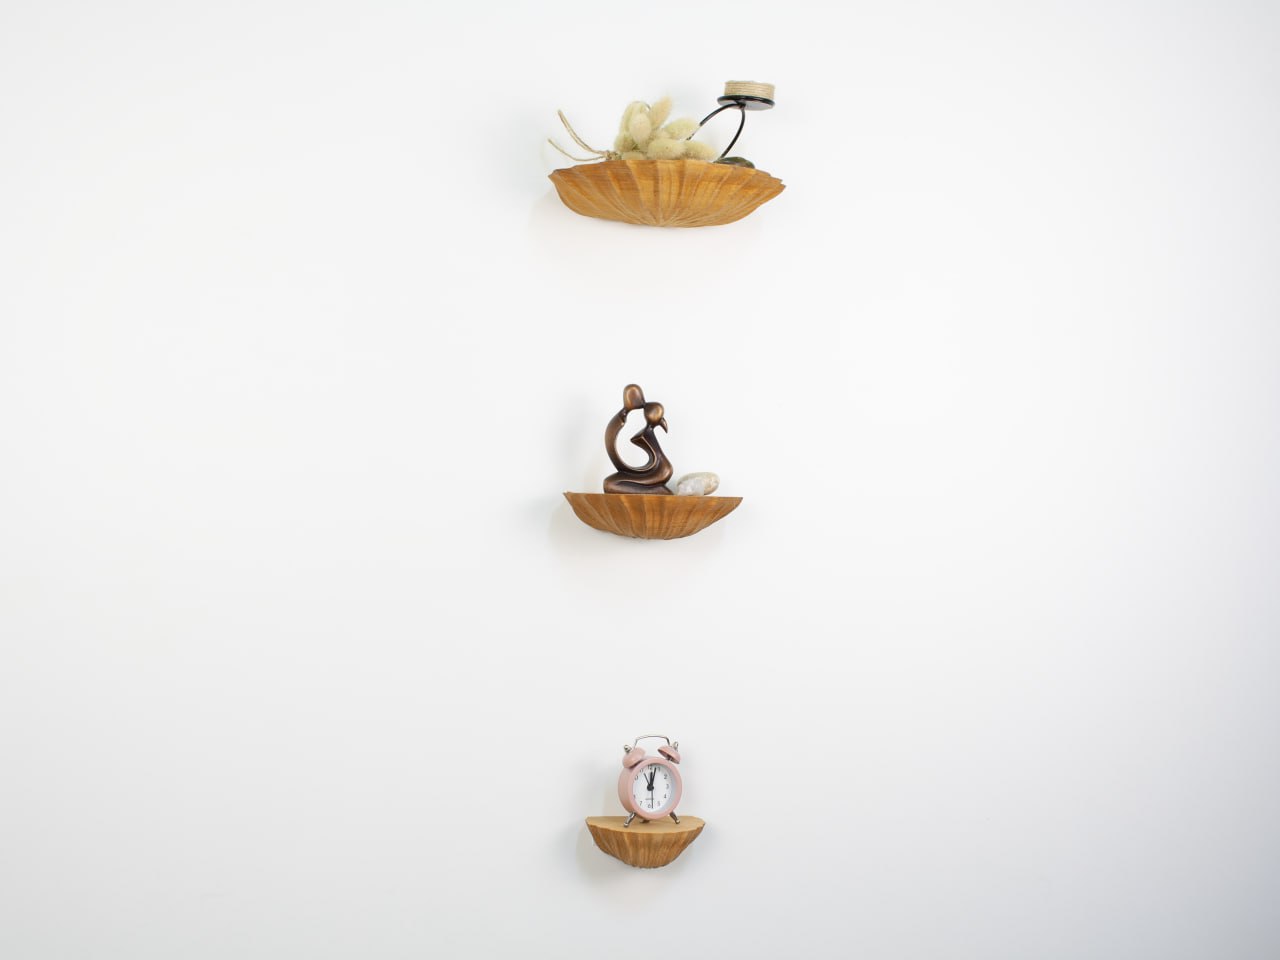 Seashell-Inspired Wooden Shelf